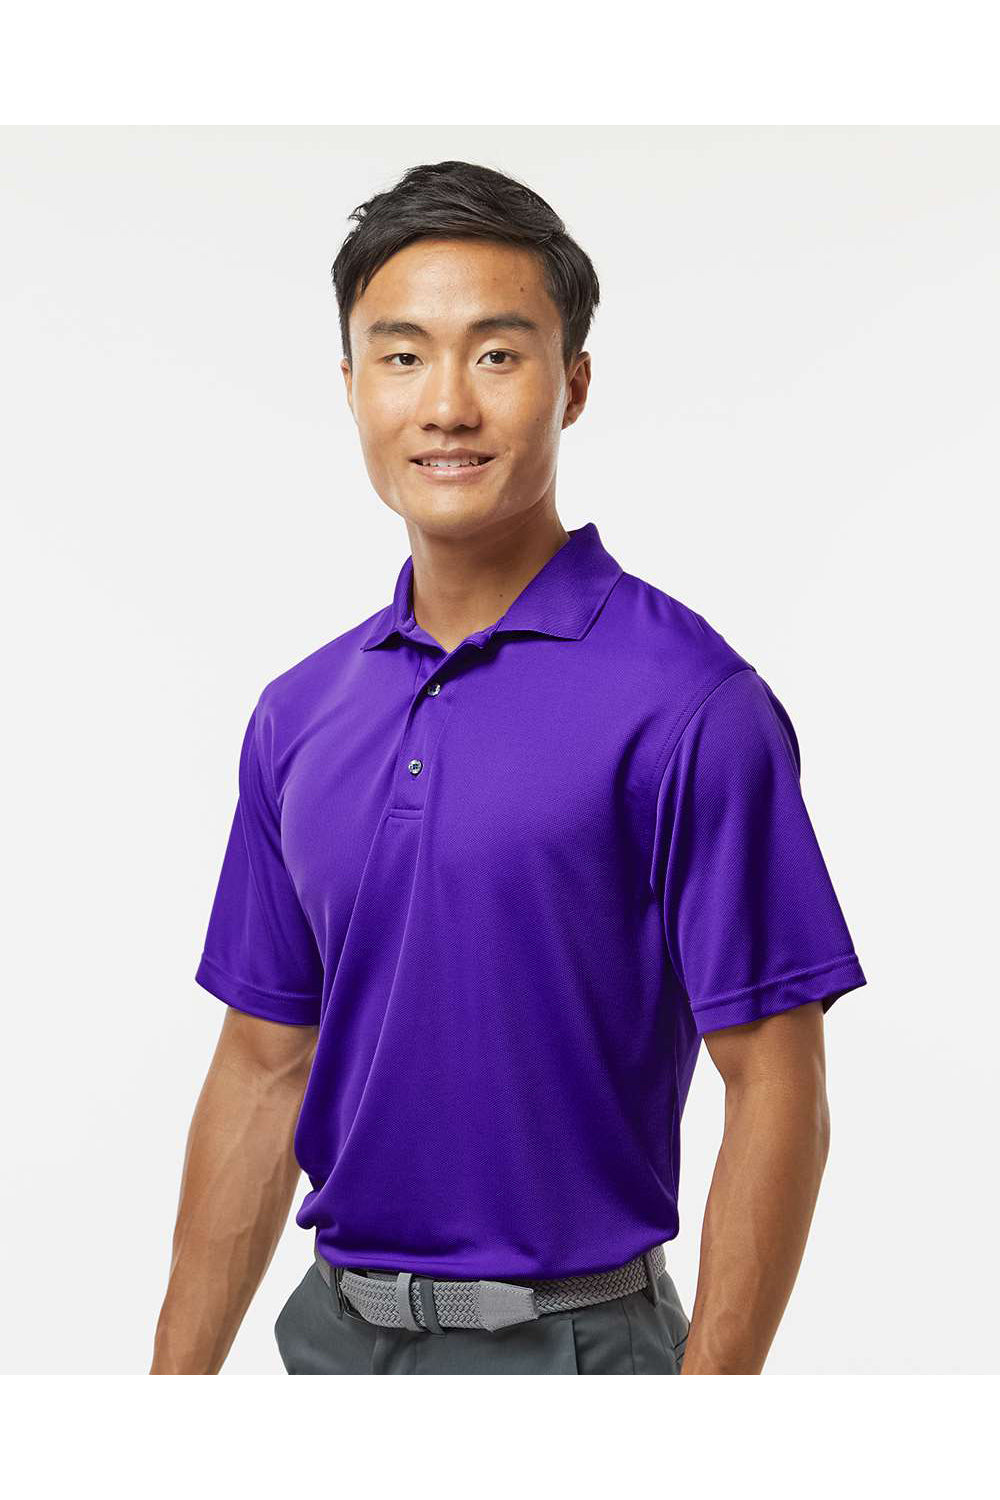 Paragon 100 Mens Saratoga Performance Mini Mesh Short Sleeve Polo Shirt Purple Model Side